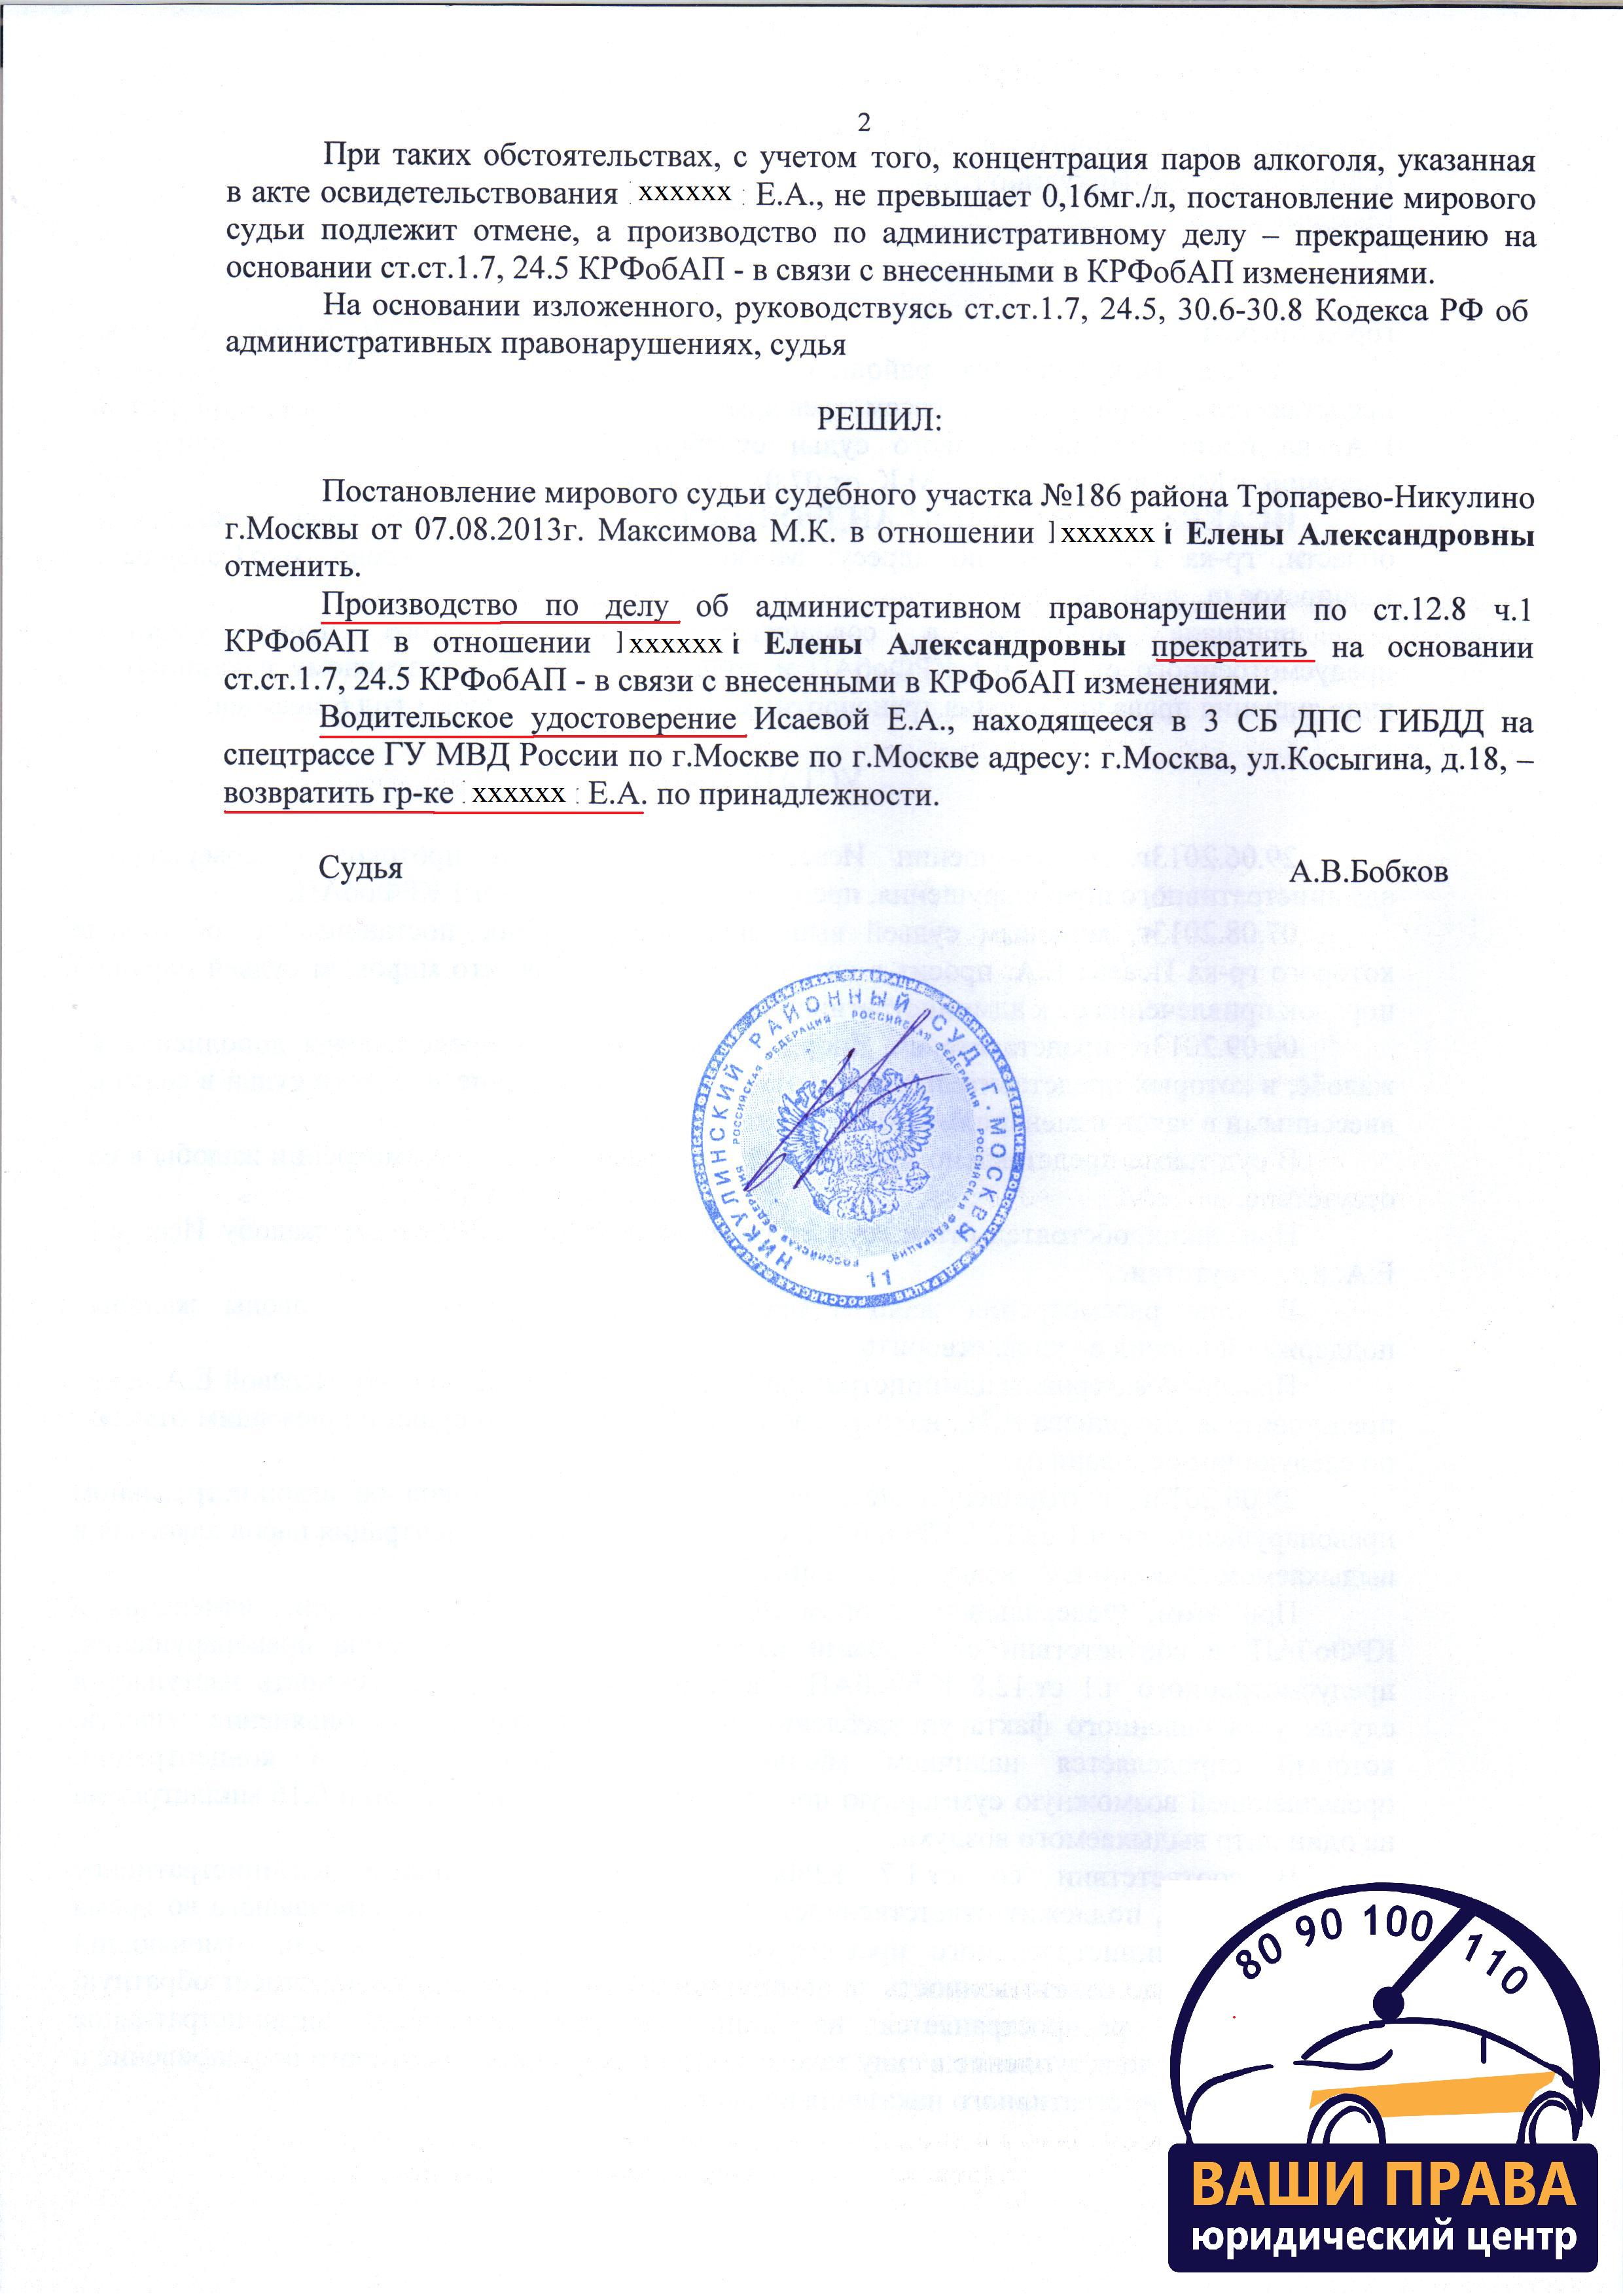 9 сентября 2013 года, г. Москва, Никулинский районный суд (л. 2)